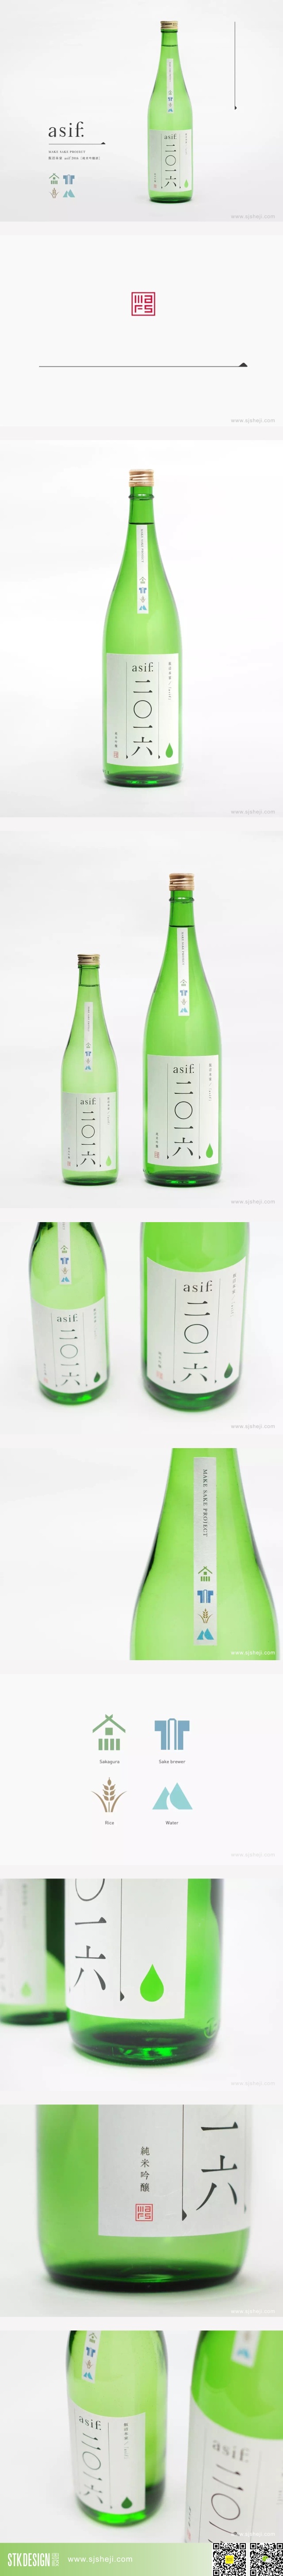 asif二O一六纯米吟醸 纯米酒包装设计